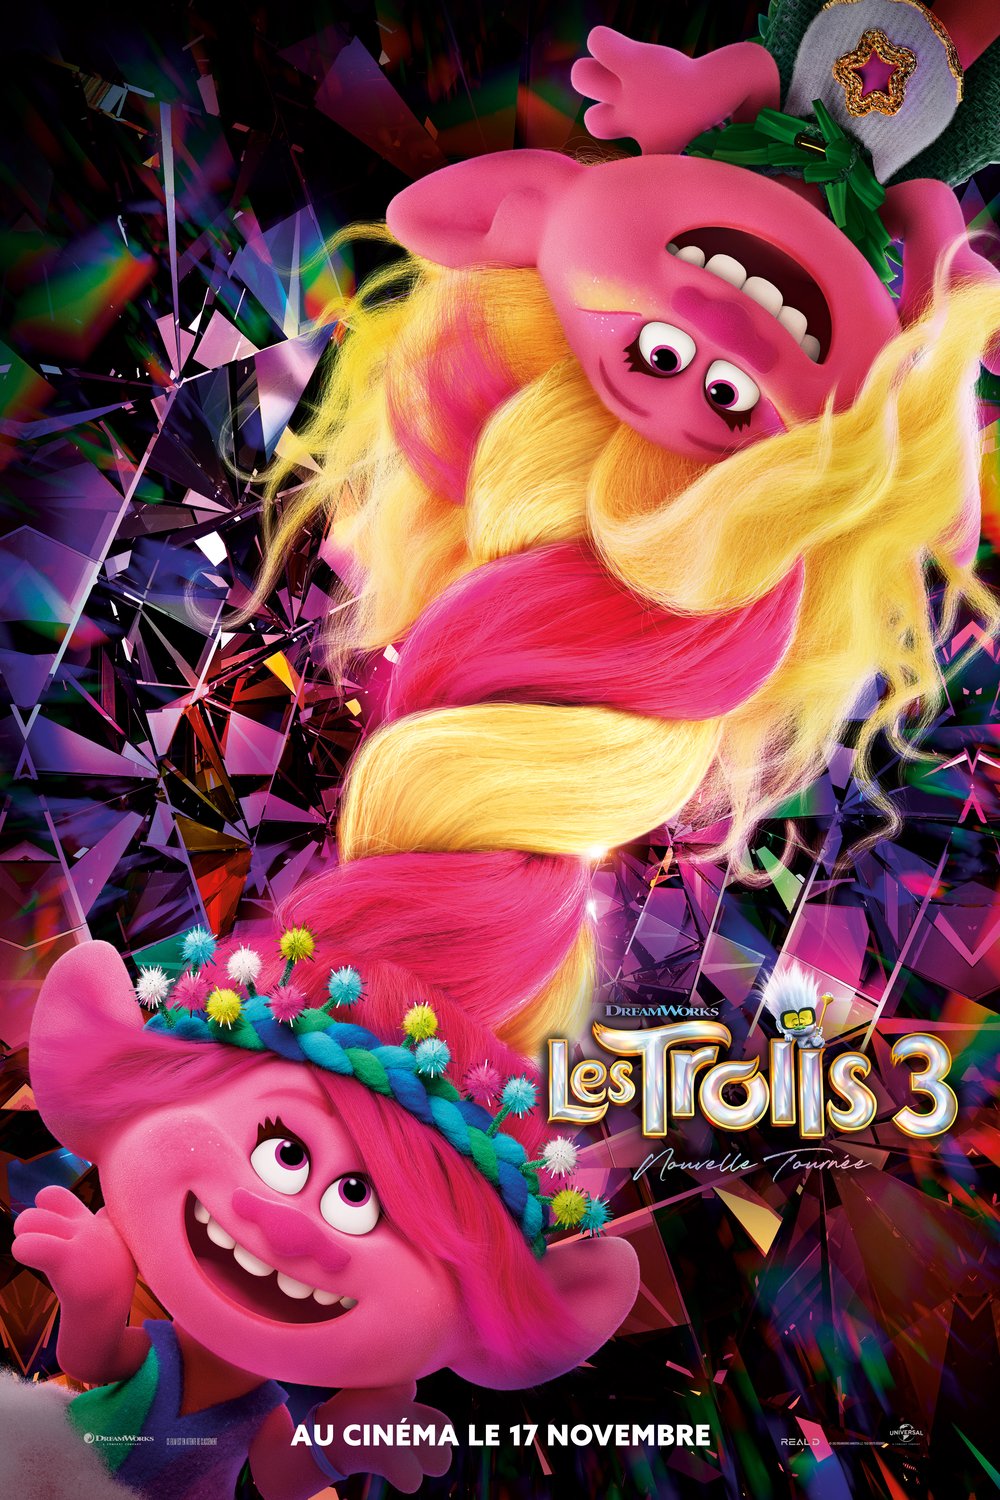 Poster of the movie Les Trolls 3: Nouvelle tournée